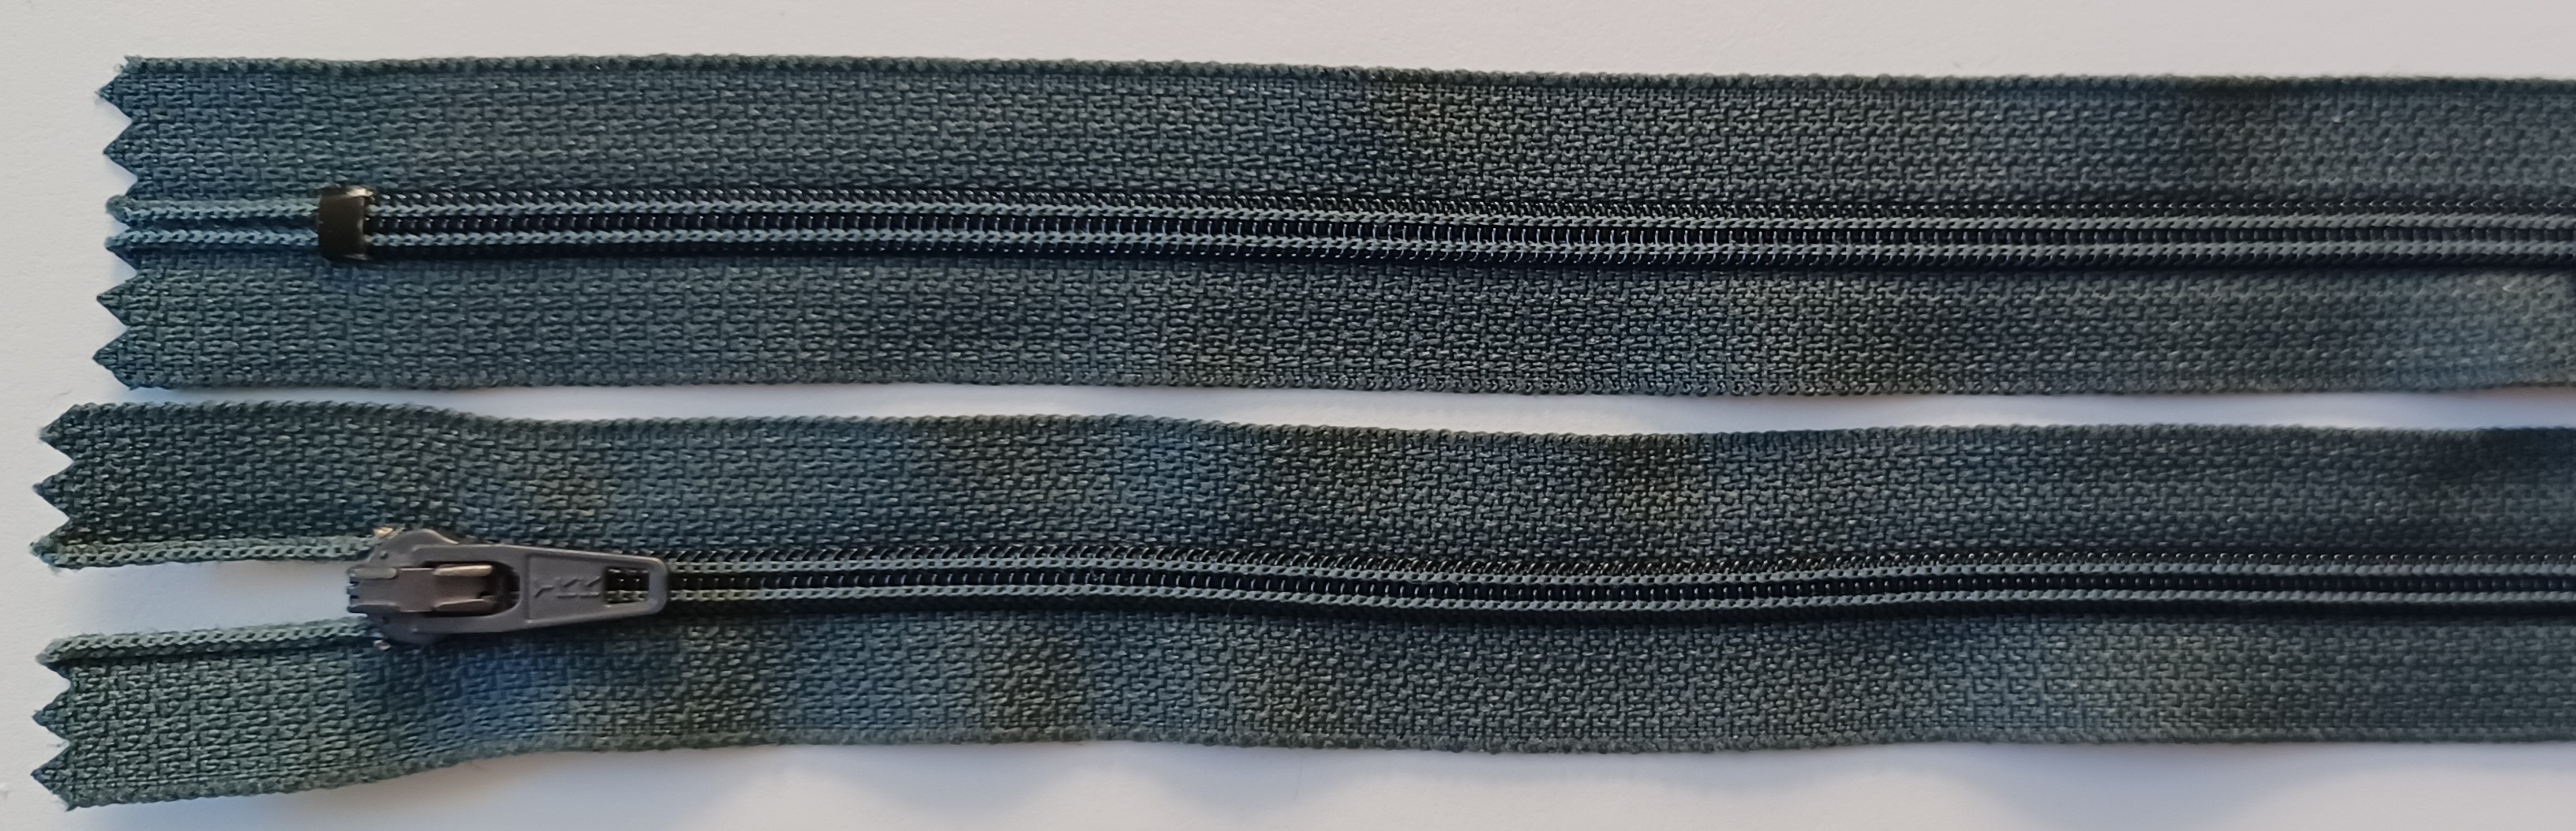 YKK 7" Graphite Nylon Coil Zipper